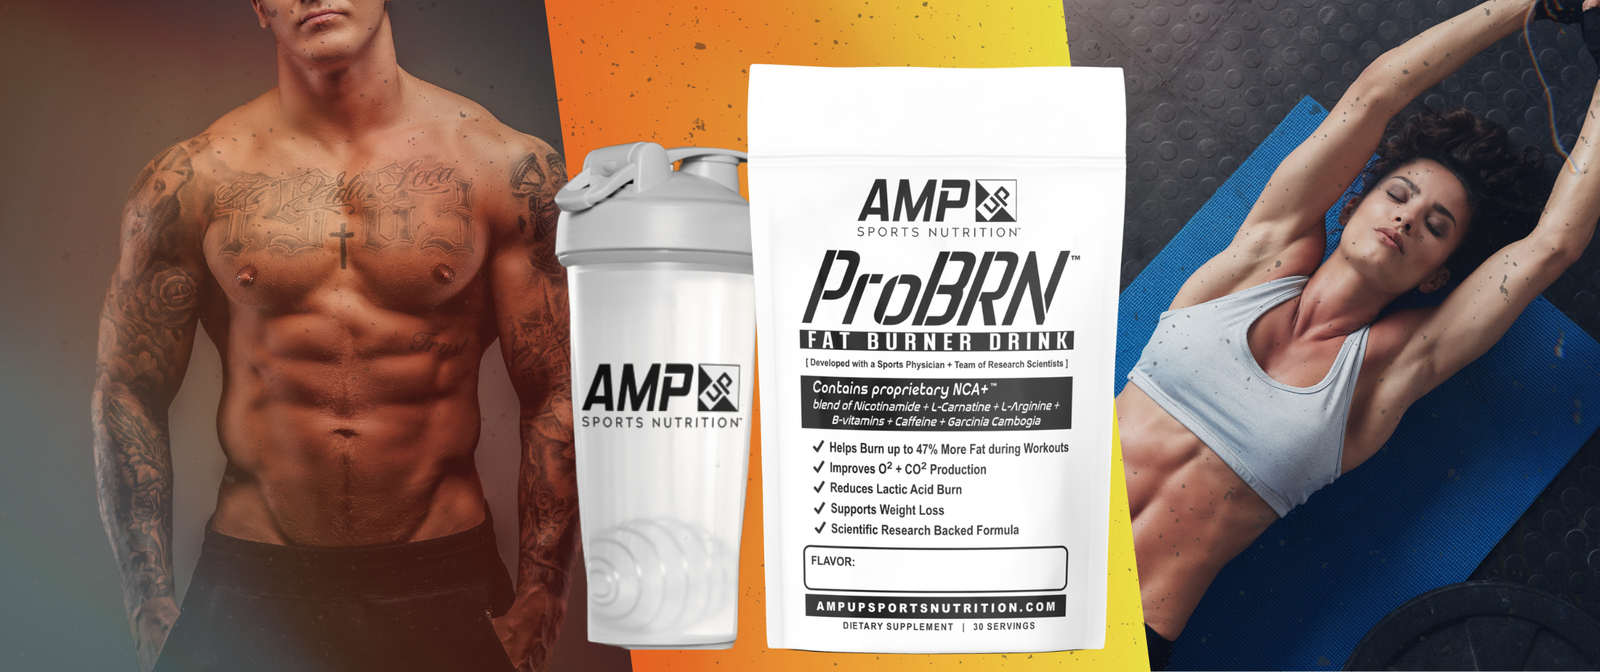 Protein - An Athlete's Best Friend – UpGo Supplements